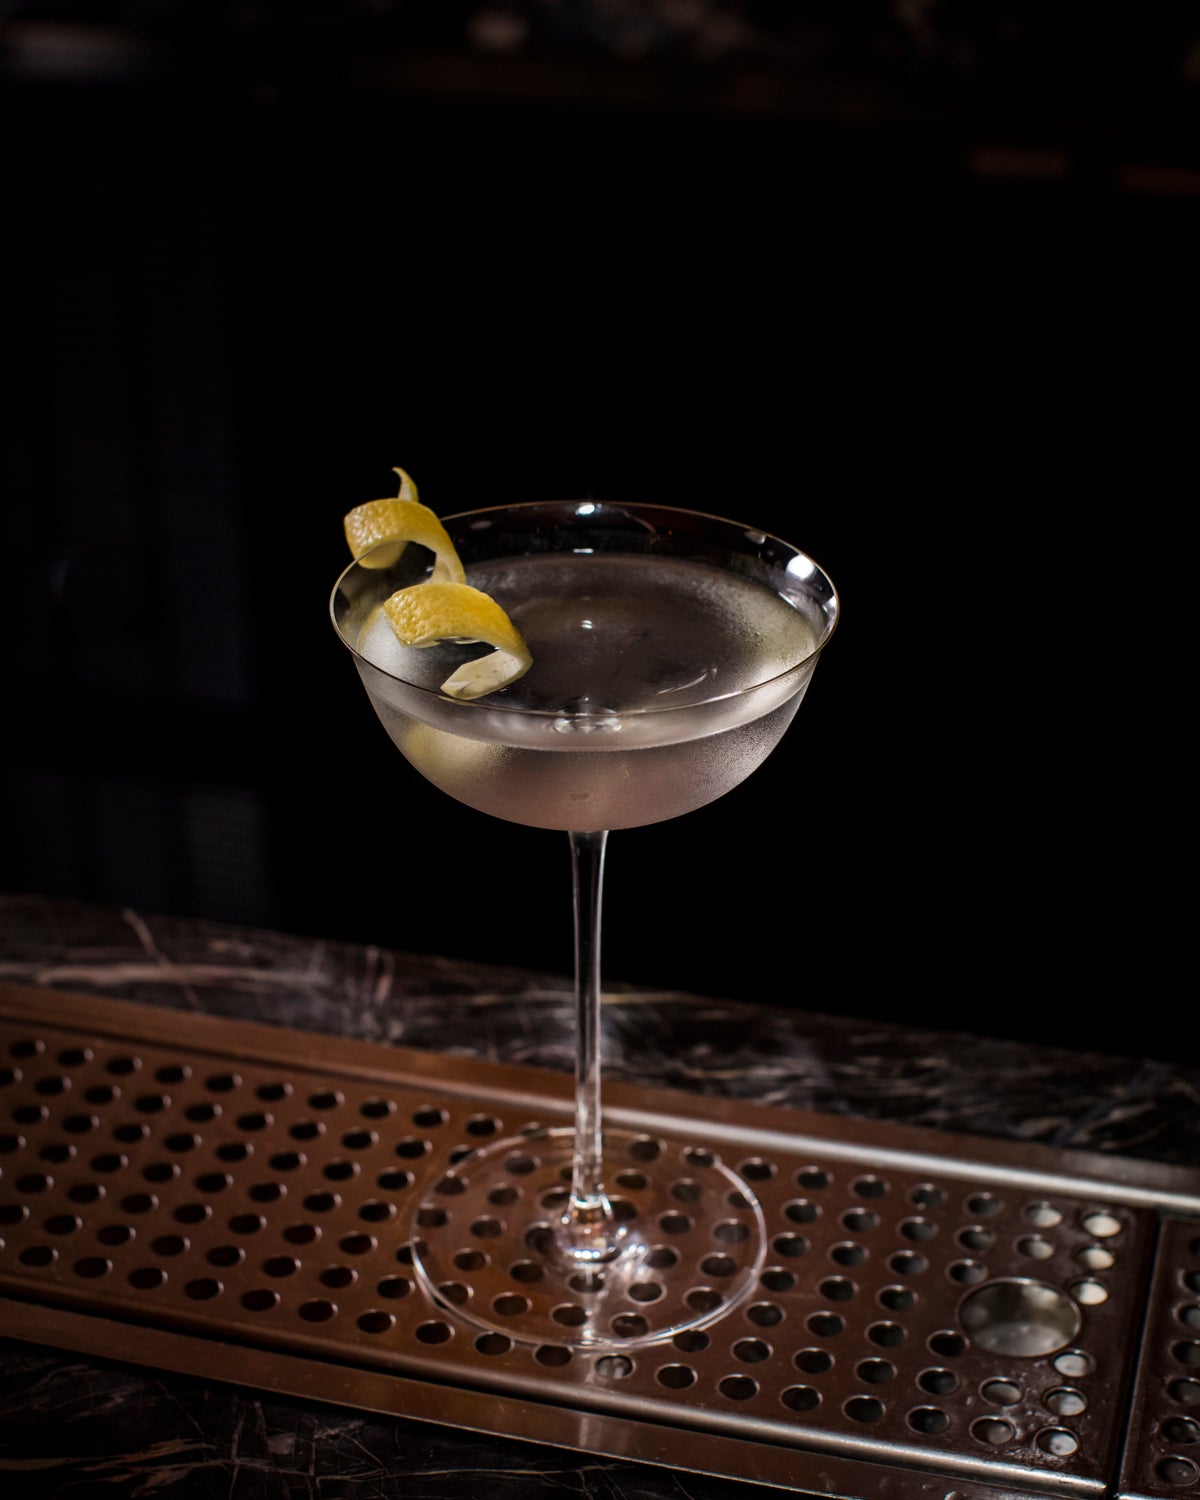 Vesper Martini in martini glass with lemon twist.